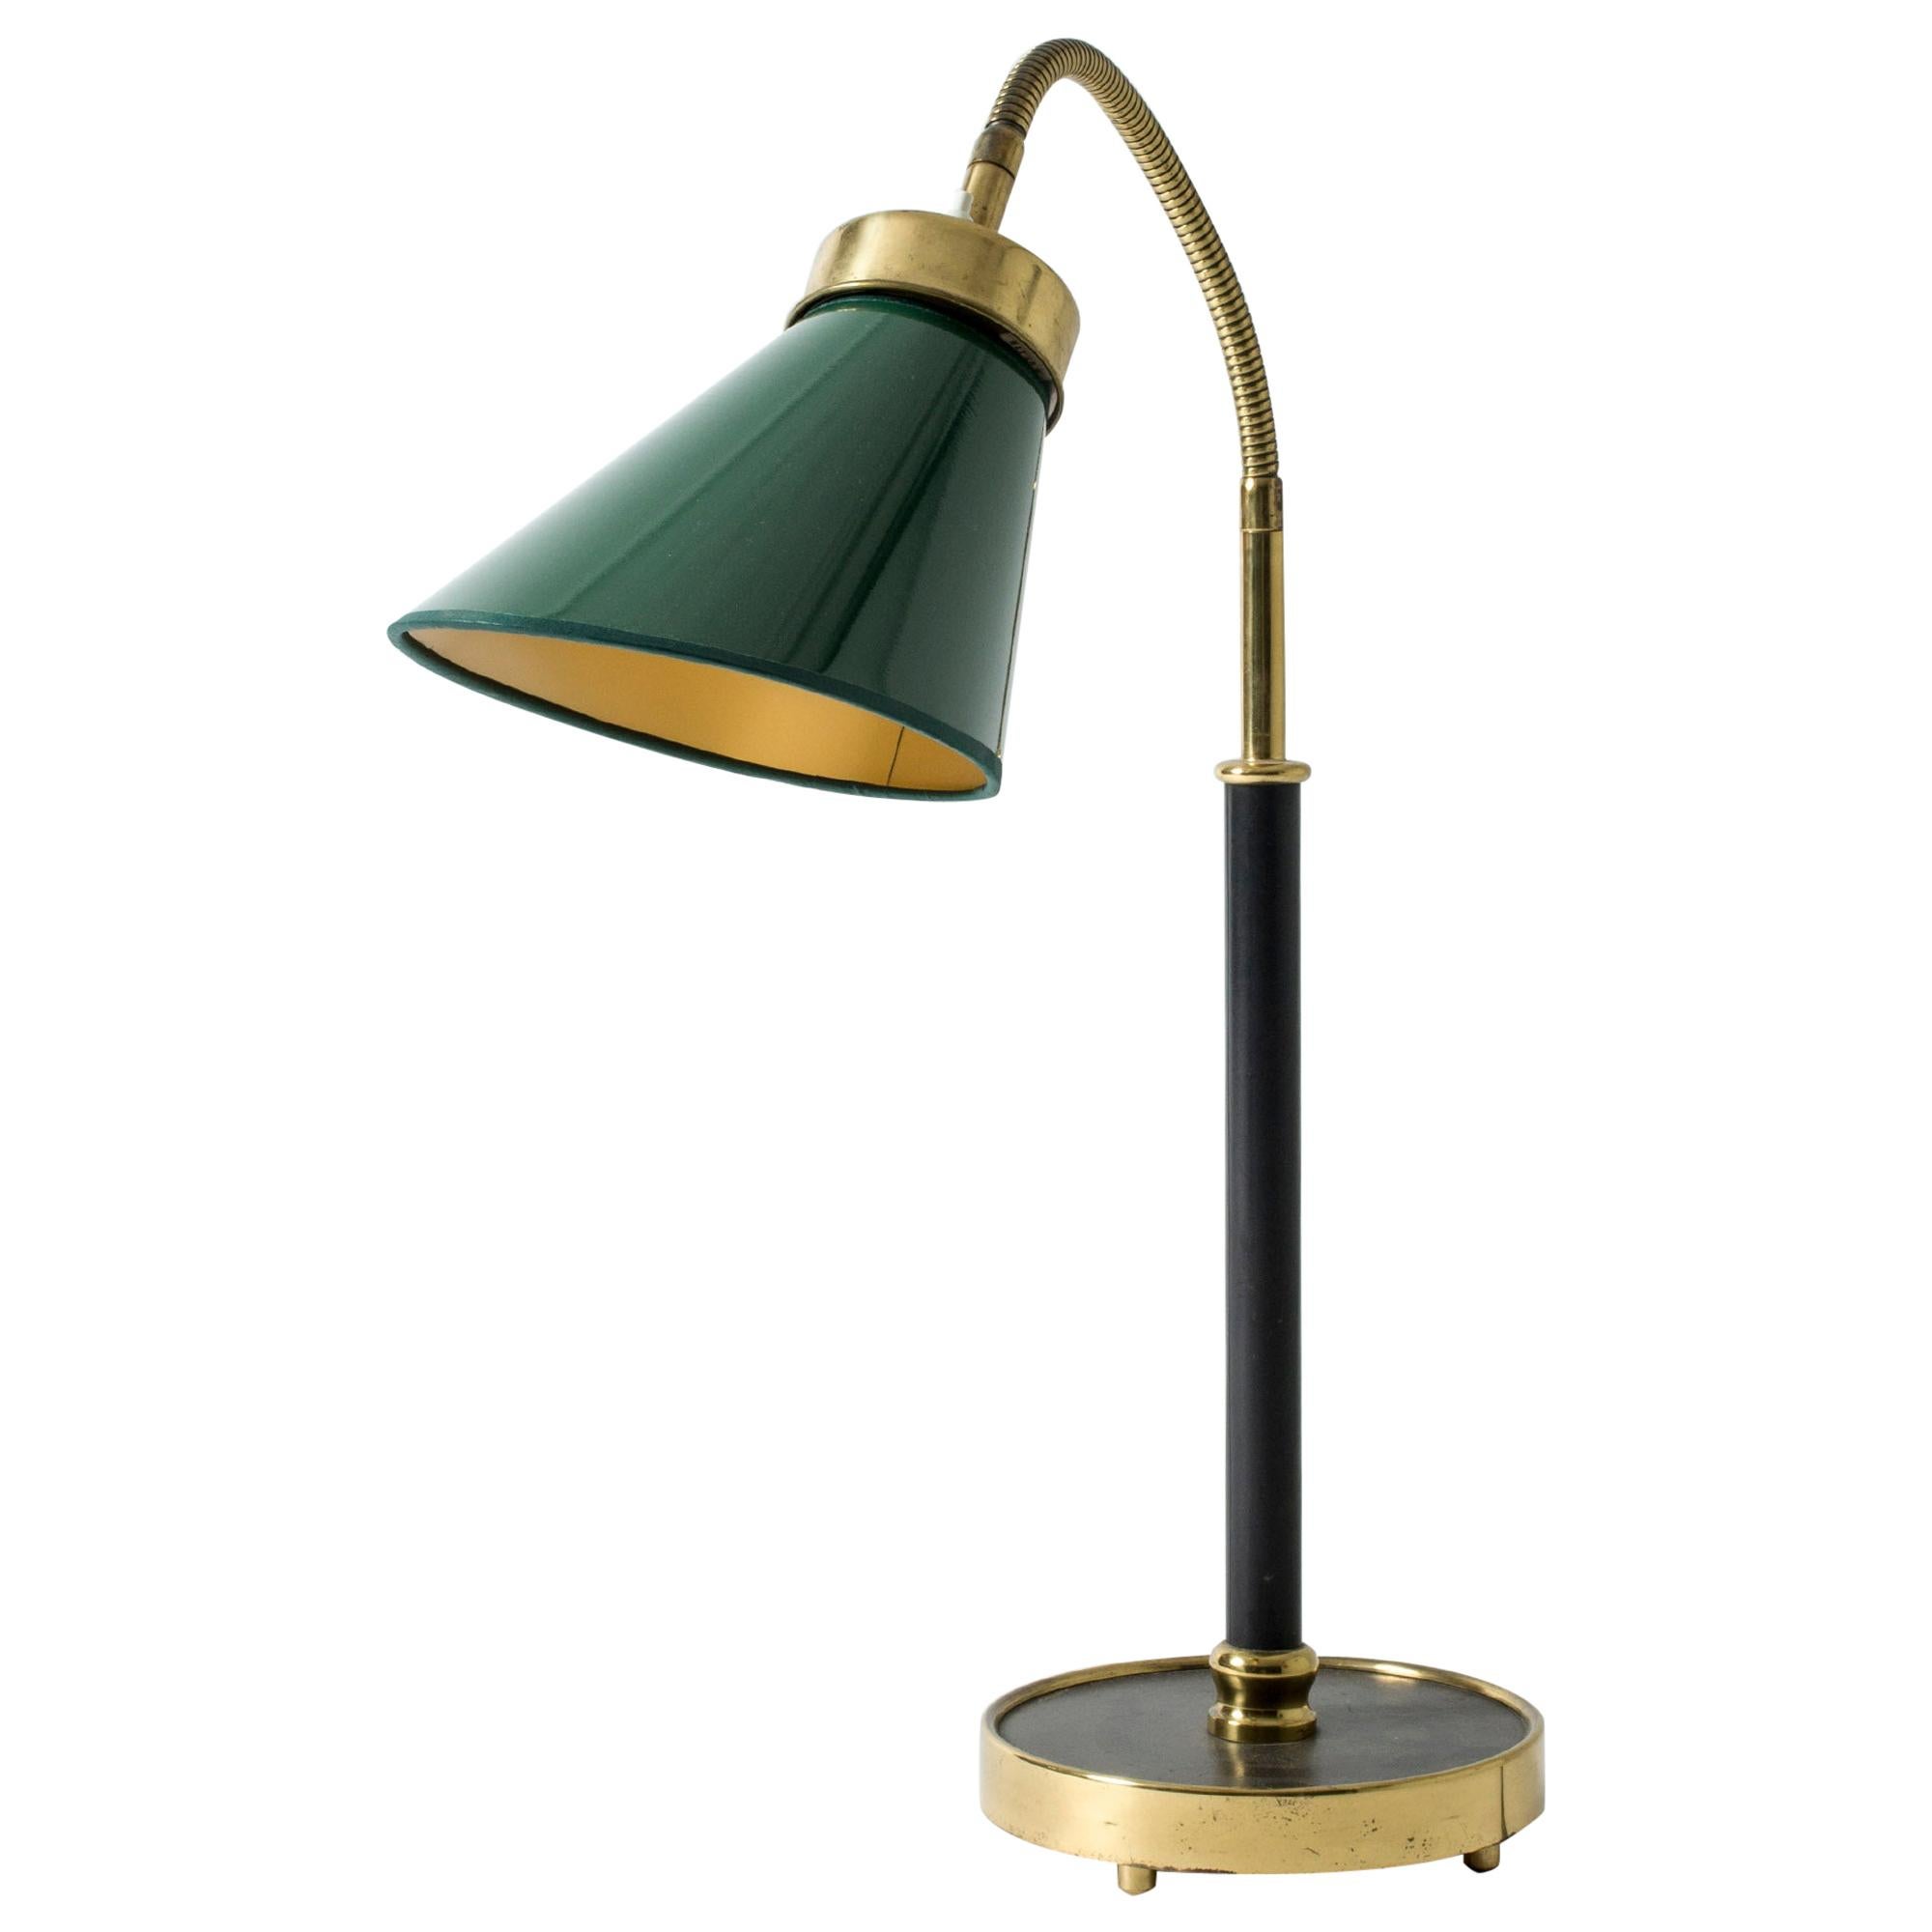 Lampe de bureau n° 21434 conçue par Josef Frank pour Svenskt Tenn, Suède